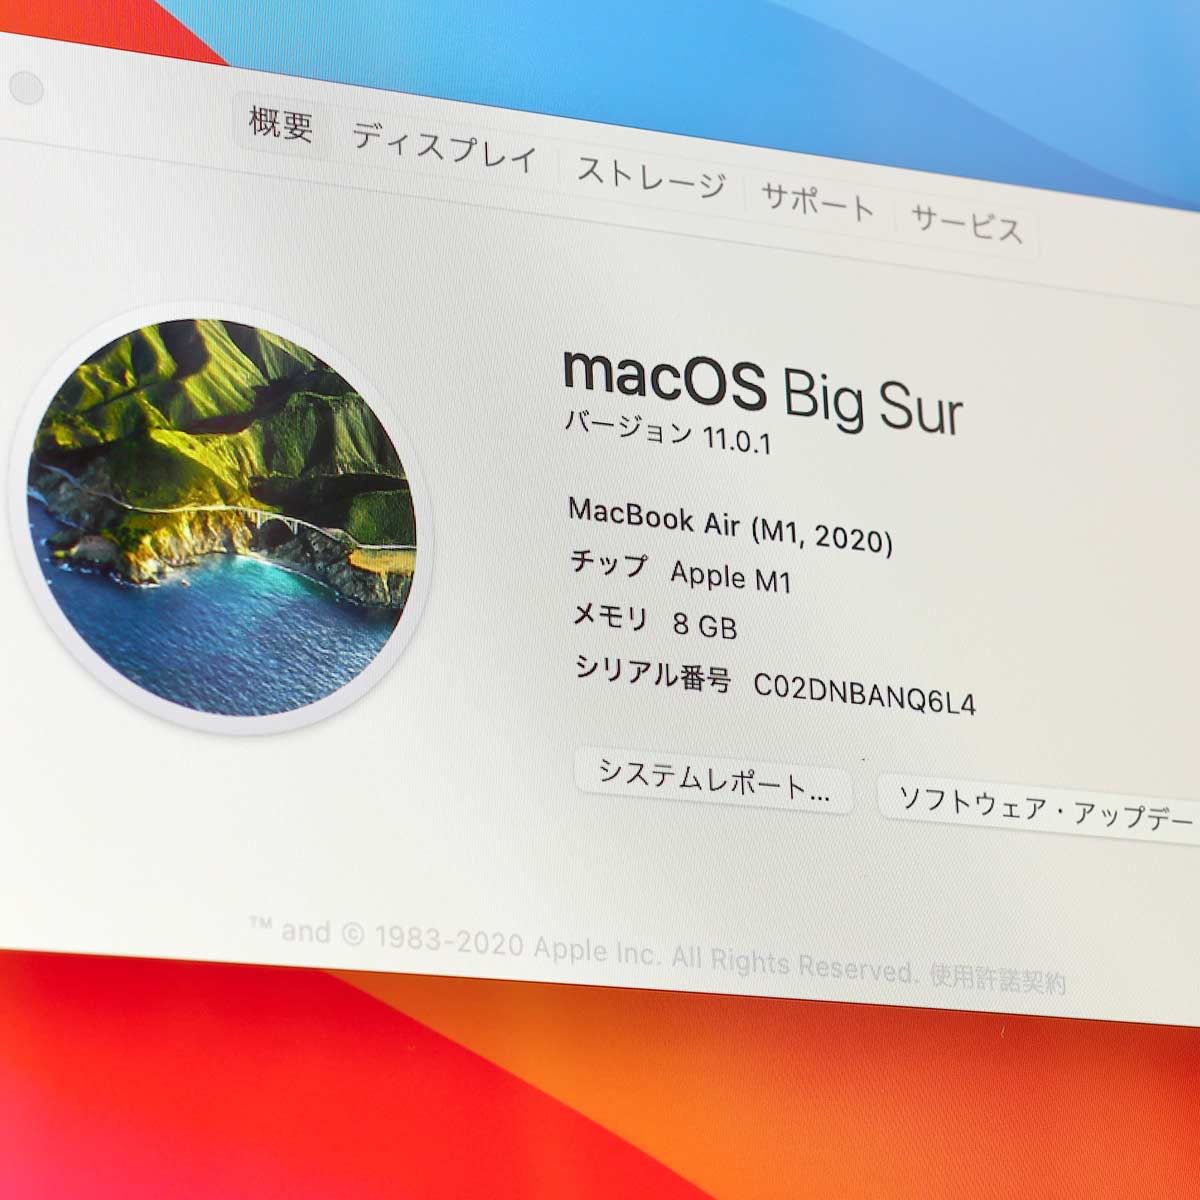 確かに速いぞ！ 「Apple M1」搭載の最新「MacBook Air」を試す - 価格 